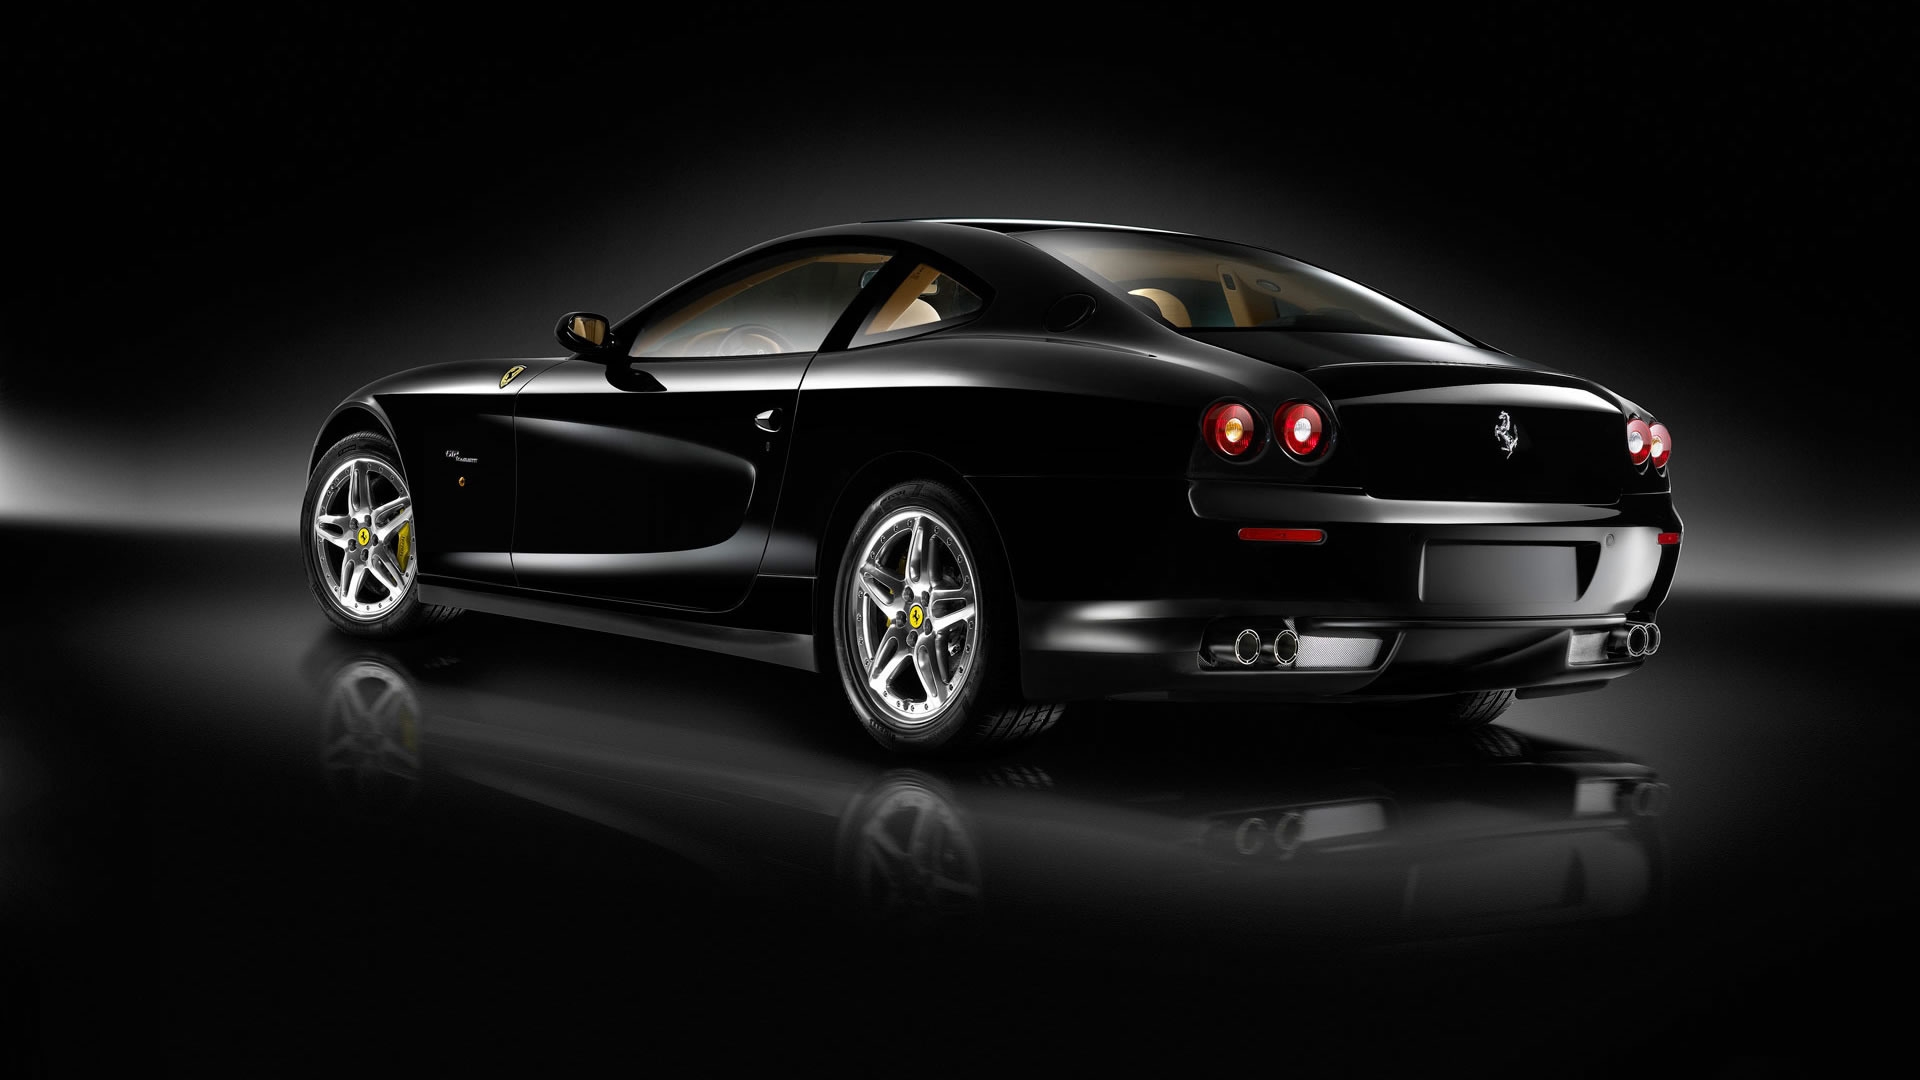 Superb Black Ferrari for 1920 x 1080 HDTV 1080p resolution